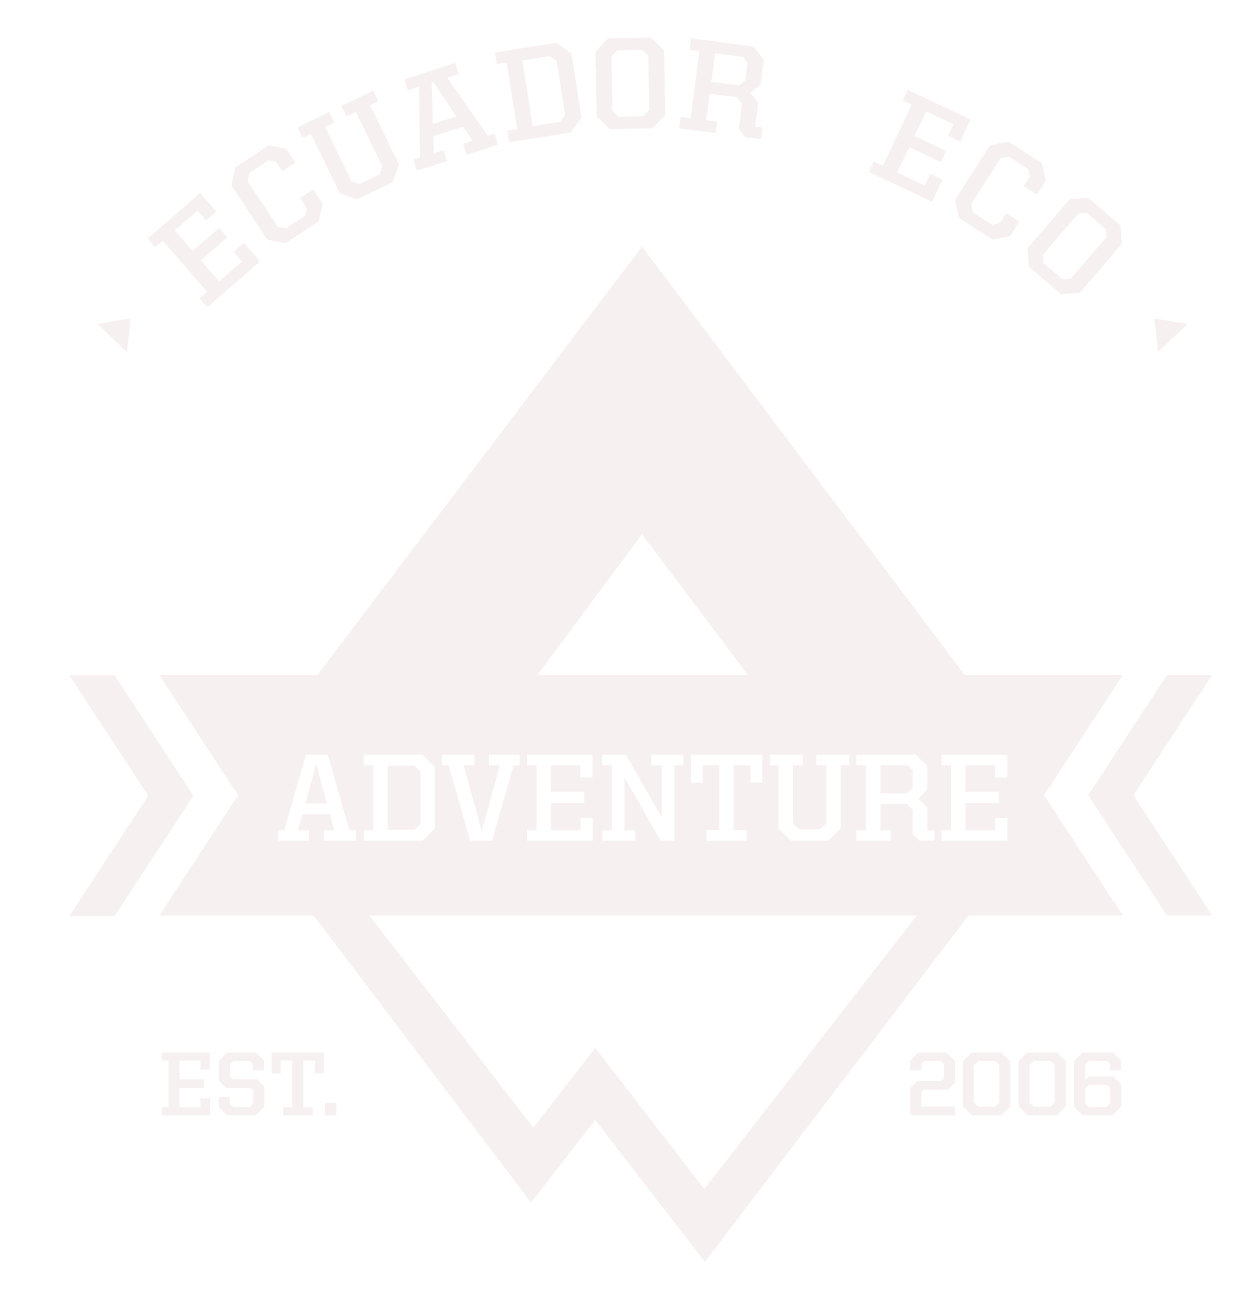 Ecuador Birding